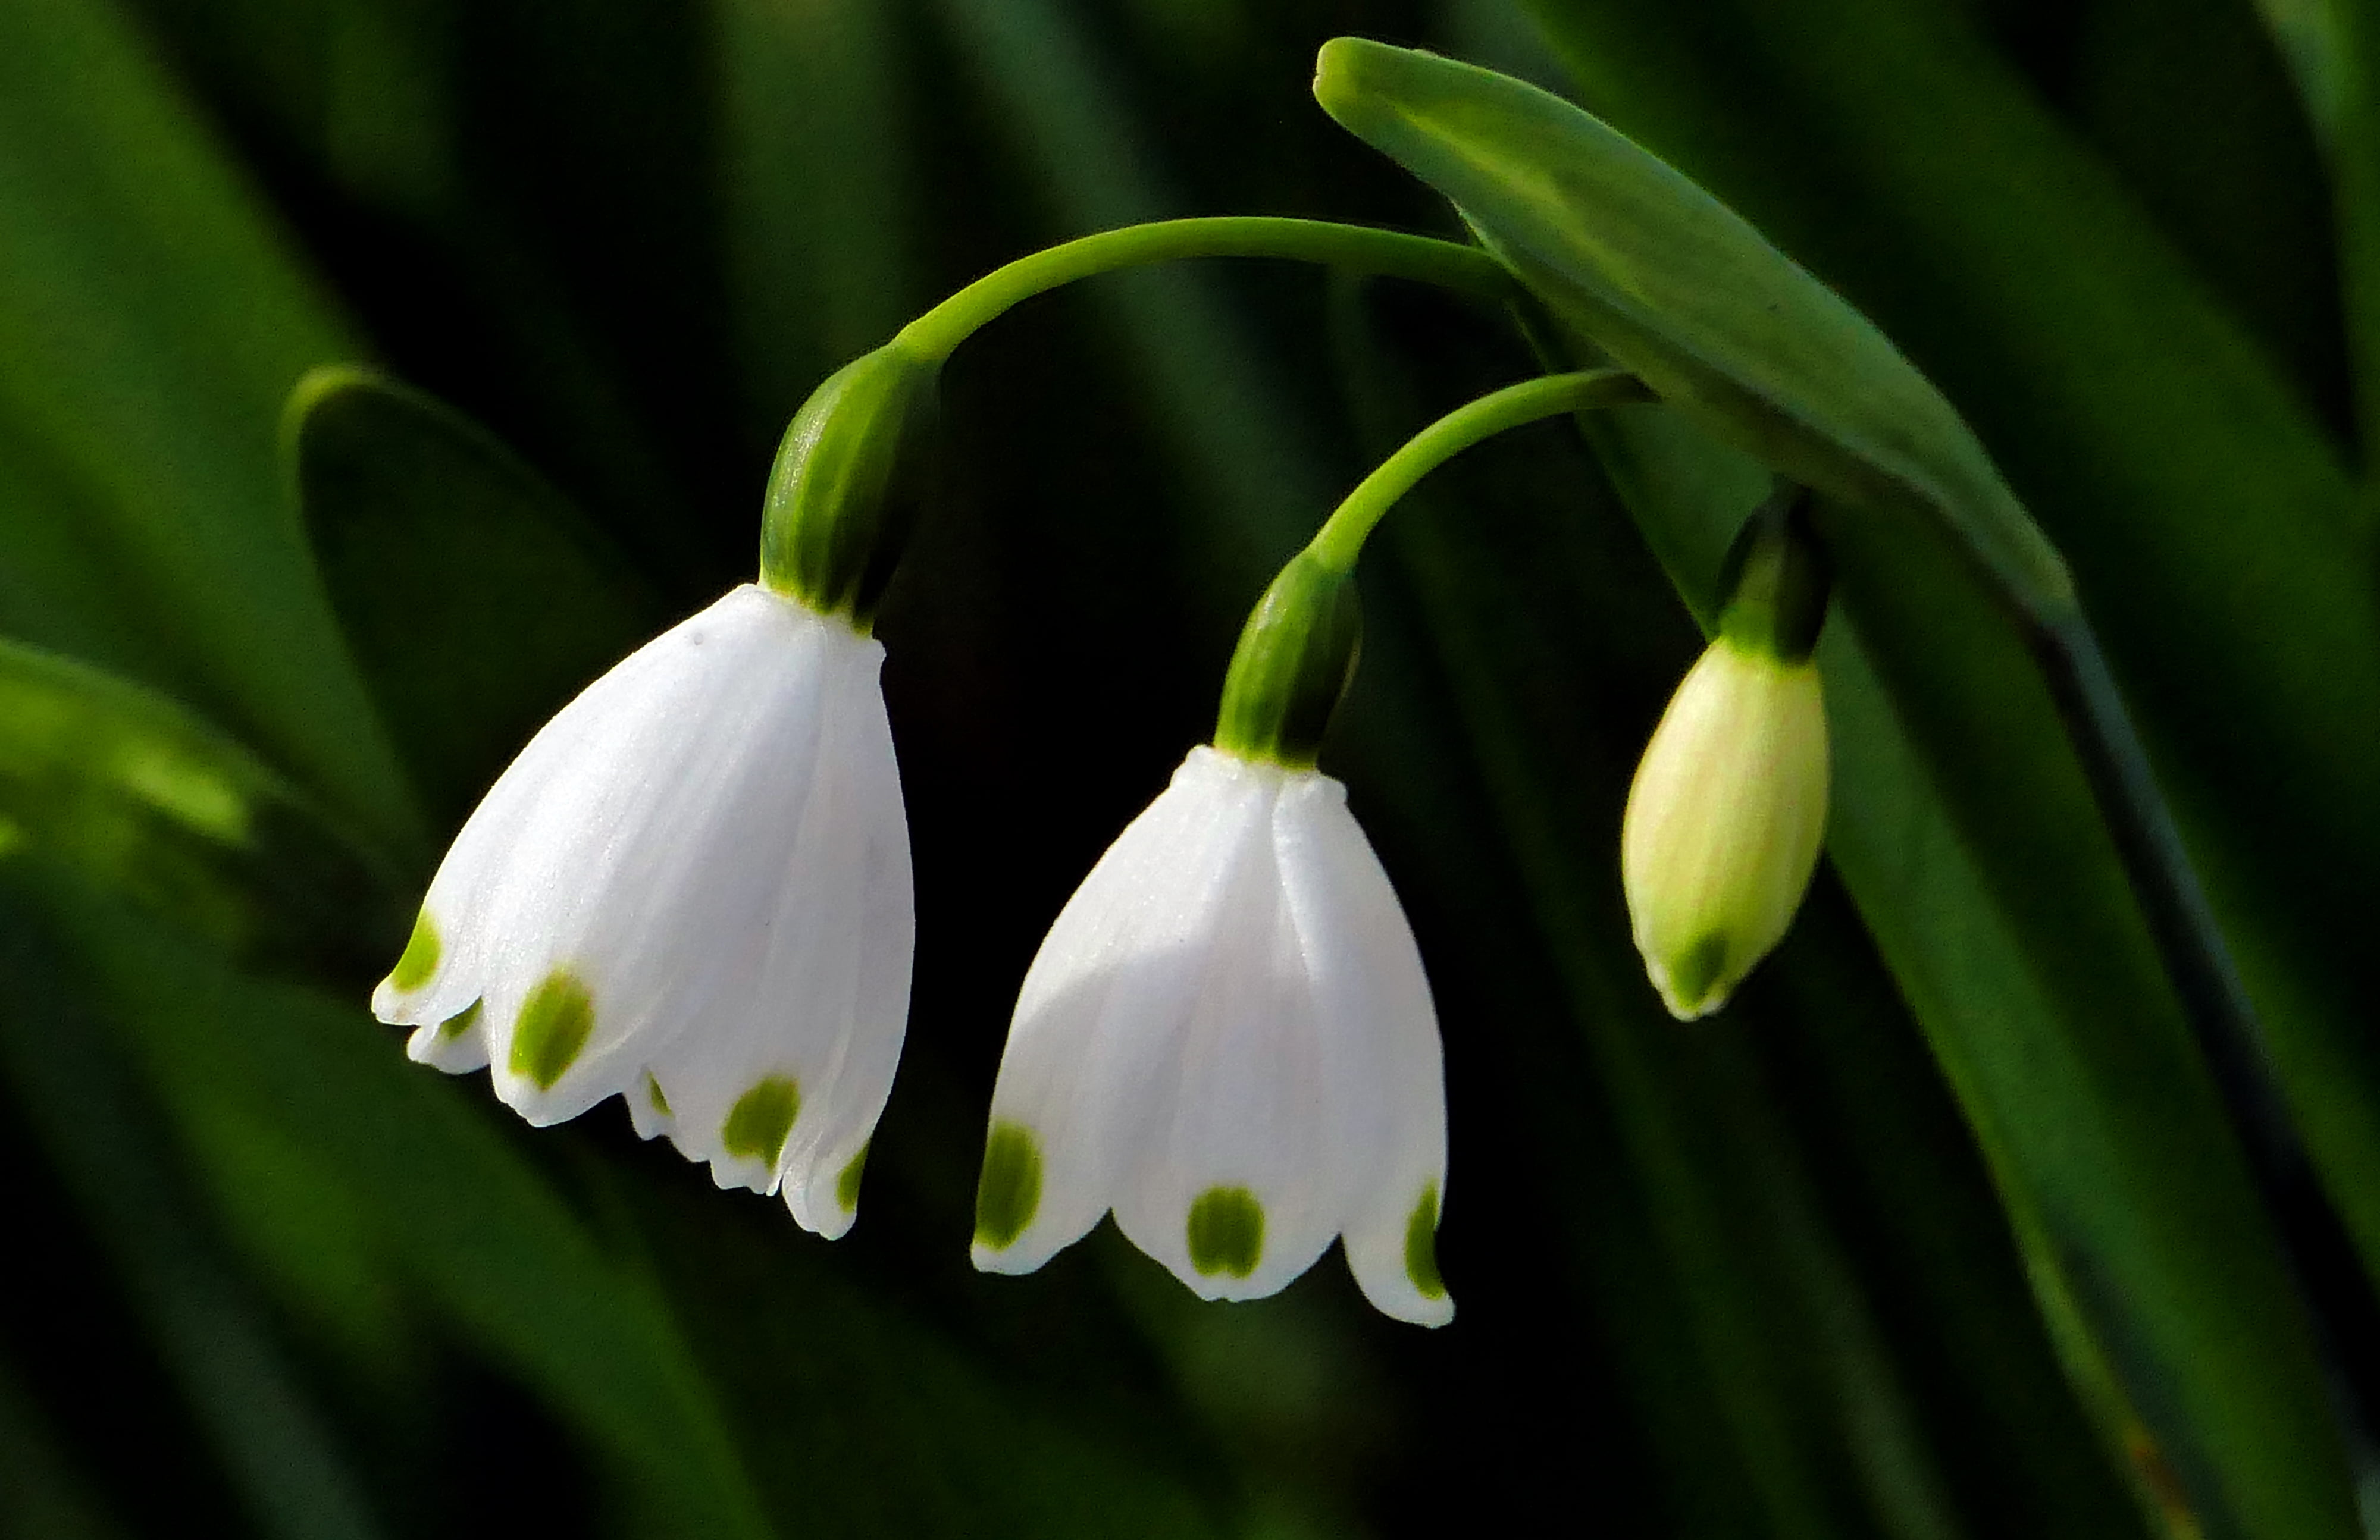 Free photo: Snowdrop flower - Bakcground, Nature, Winter - Free Download - Jooinn